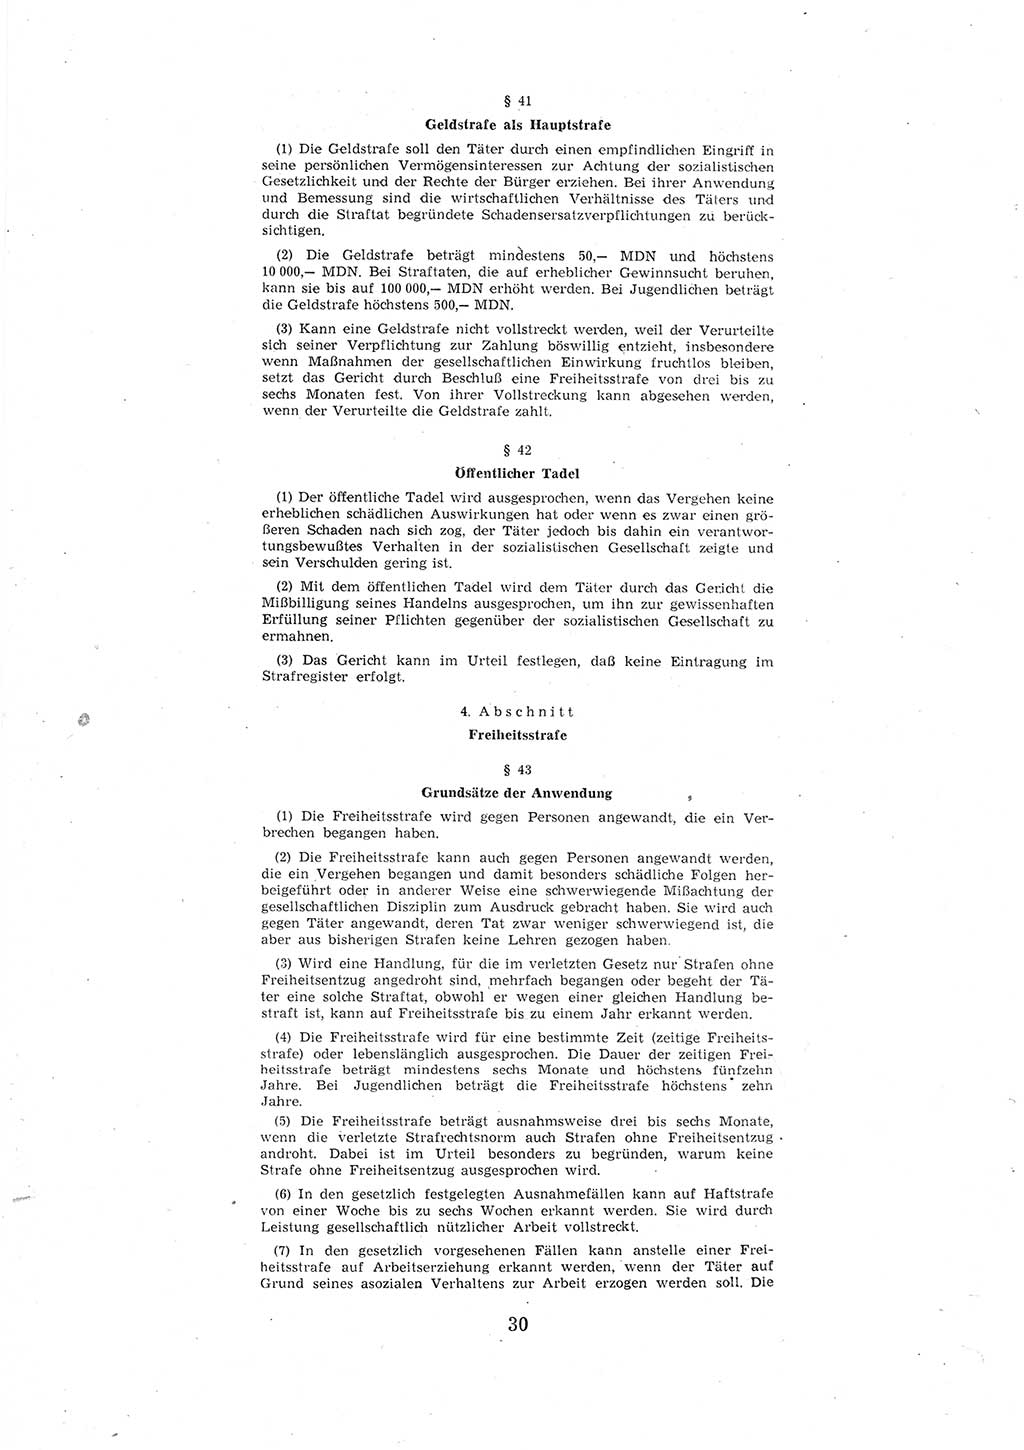 Entwurf des Strafgesetzbuches (StGB) der Deutschen Demokratischen Republik (DDR) 1967, Seite 30 (Entw. StGB DDR 1967, S. 30)